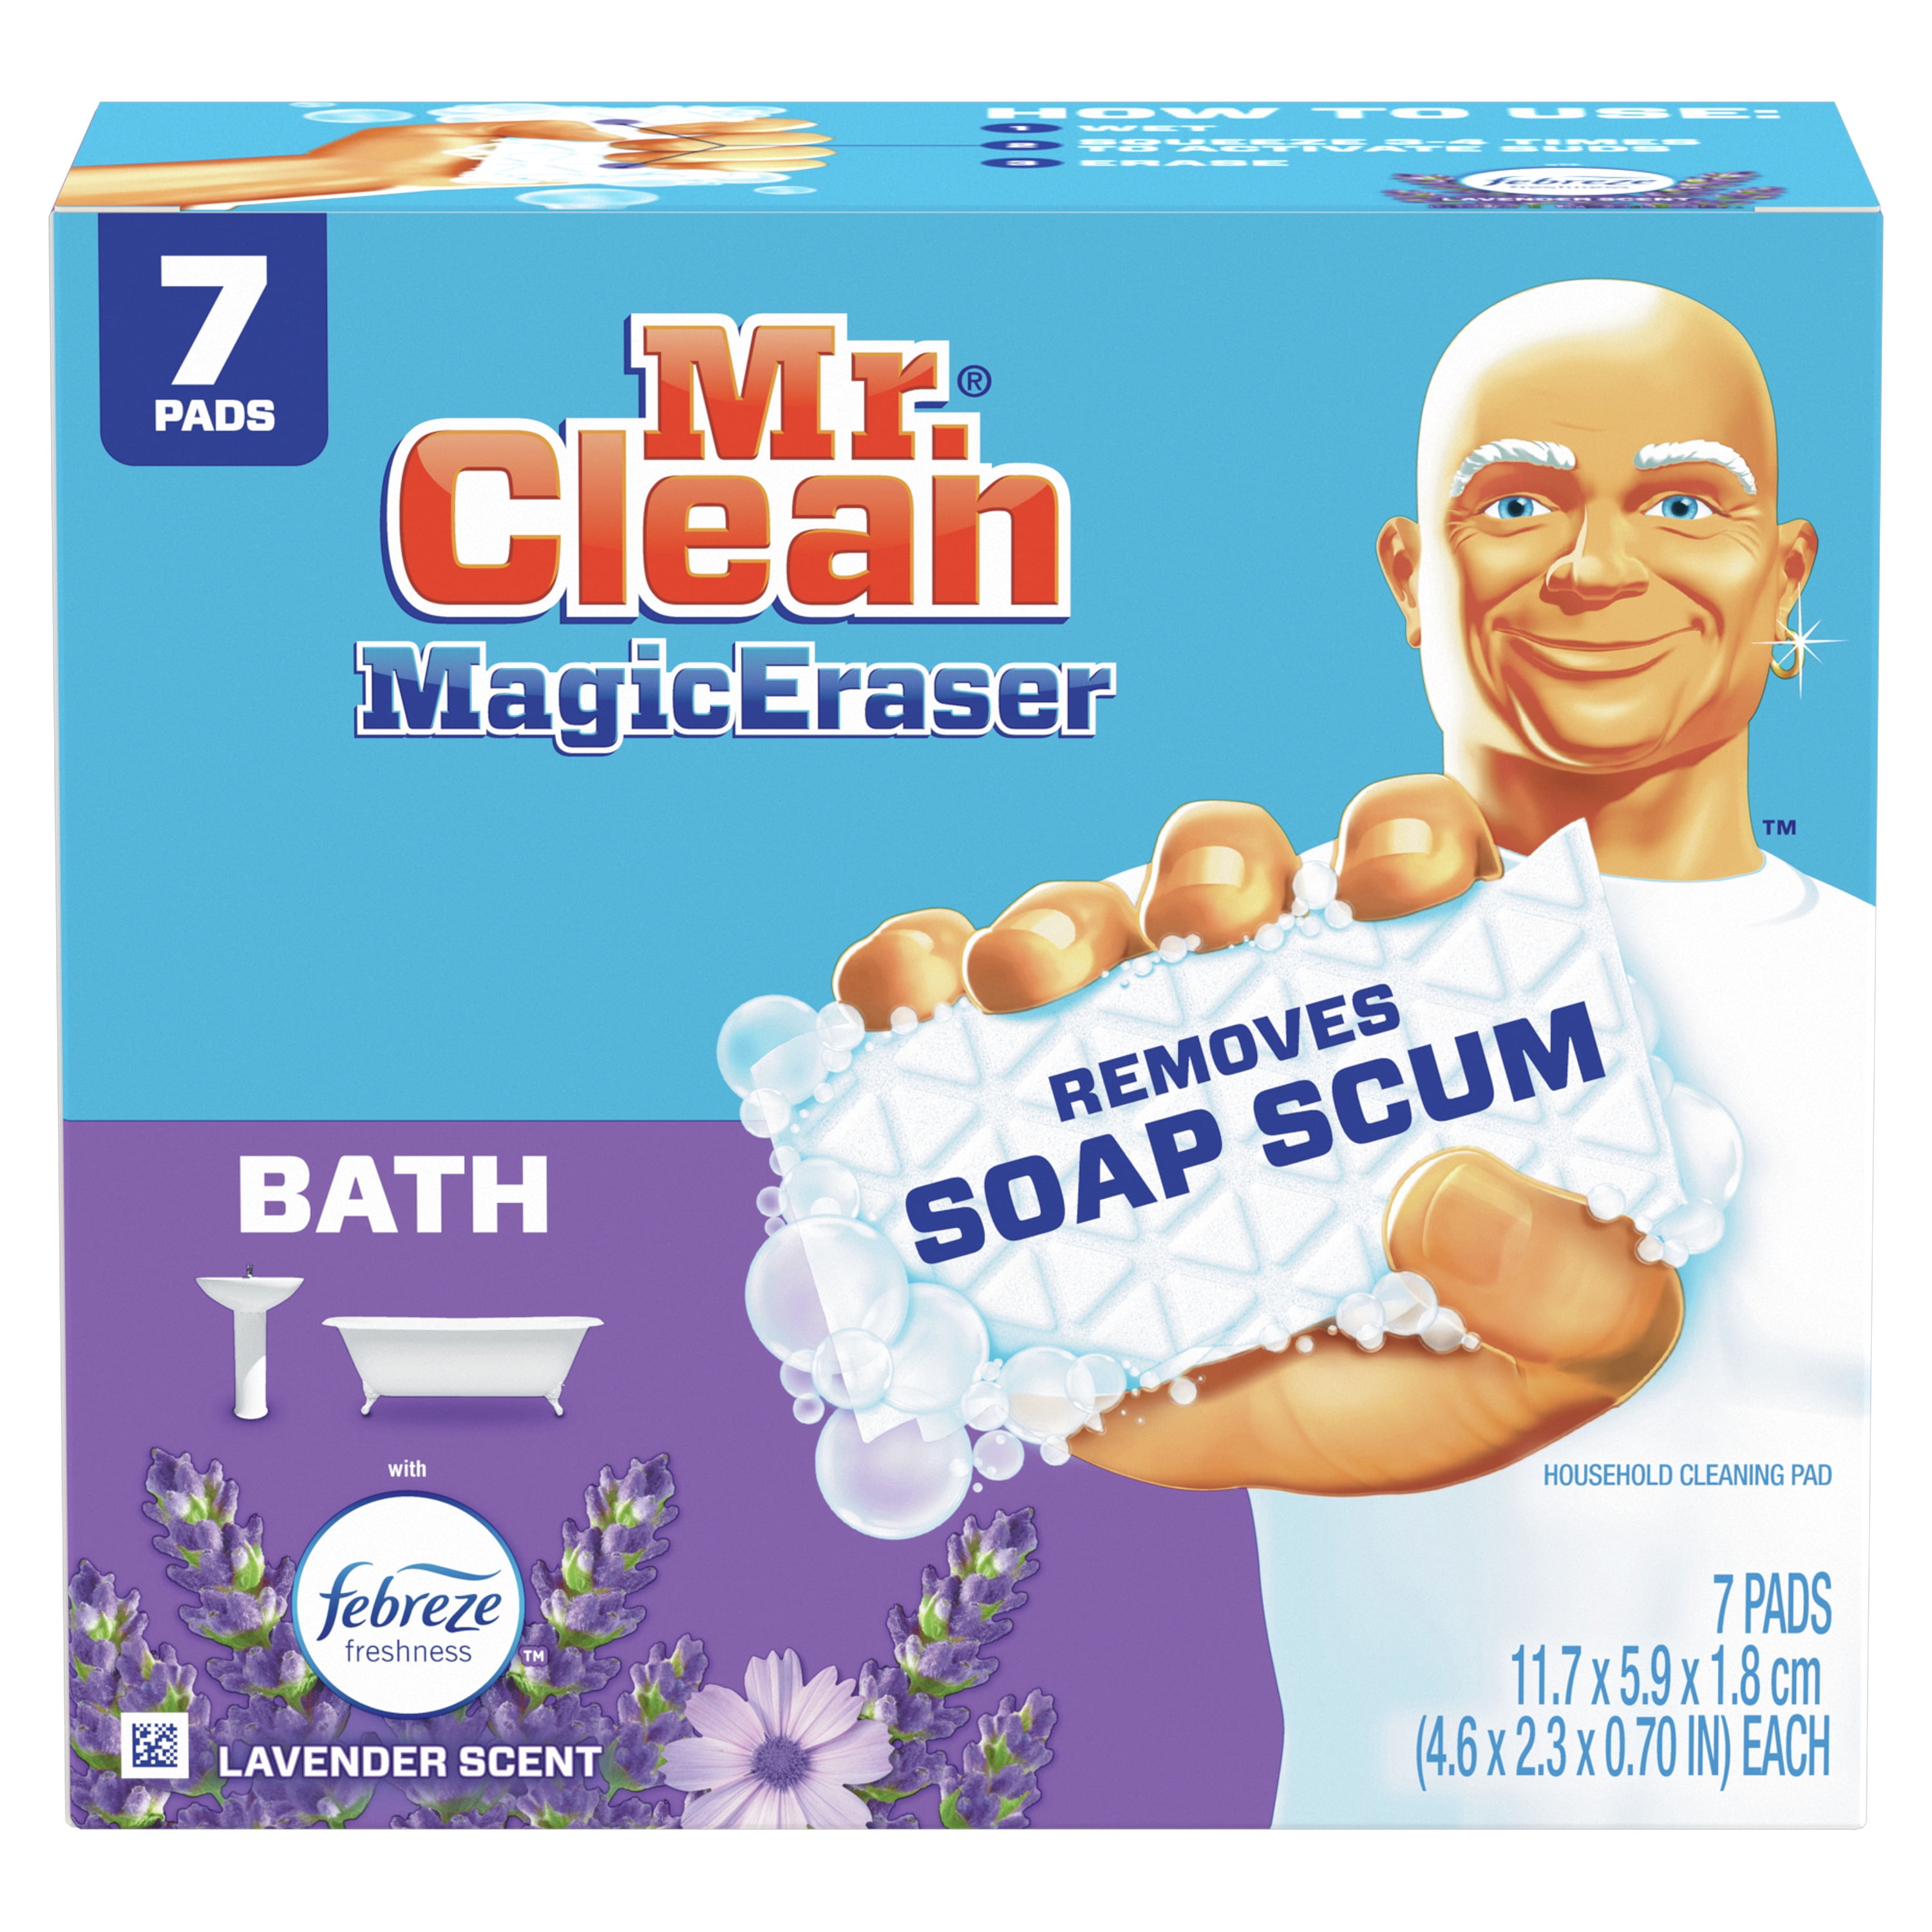 Mr. Clean Magic Eraser Bath Scrubber with Febreze Lavender Scent, All Purpose Foam Cleaning Pads with Durafoam, 7 Ct